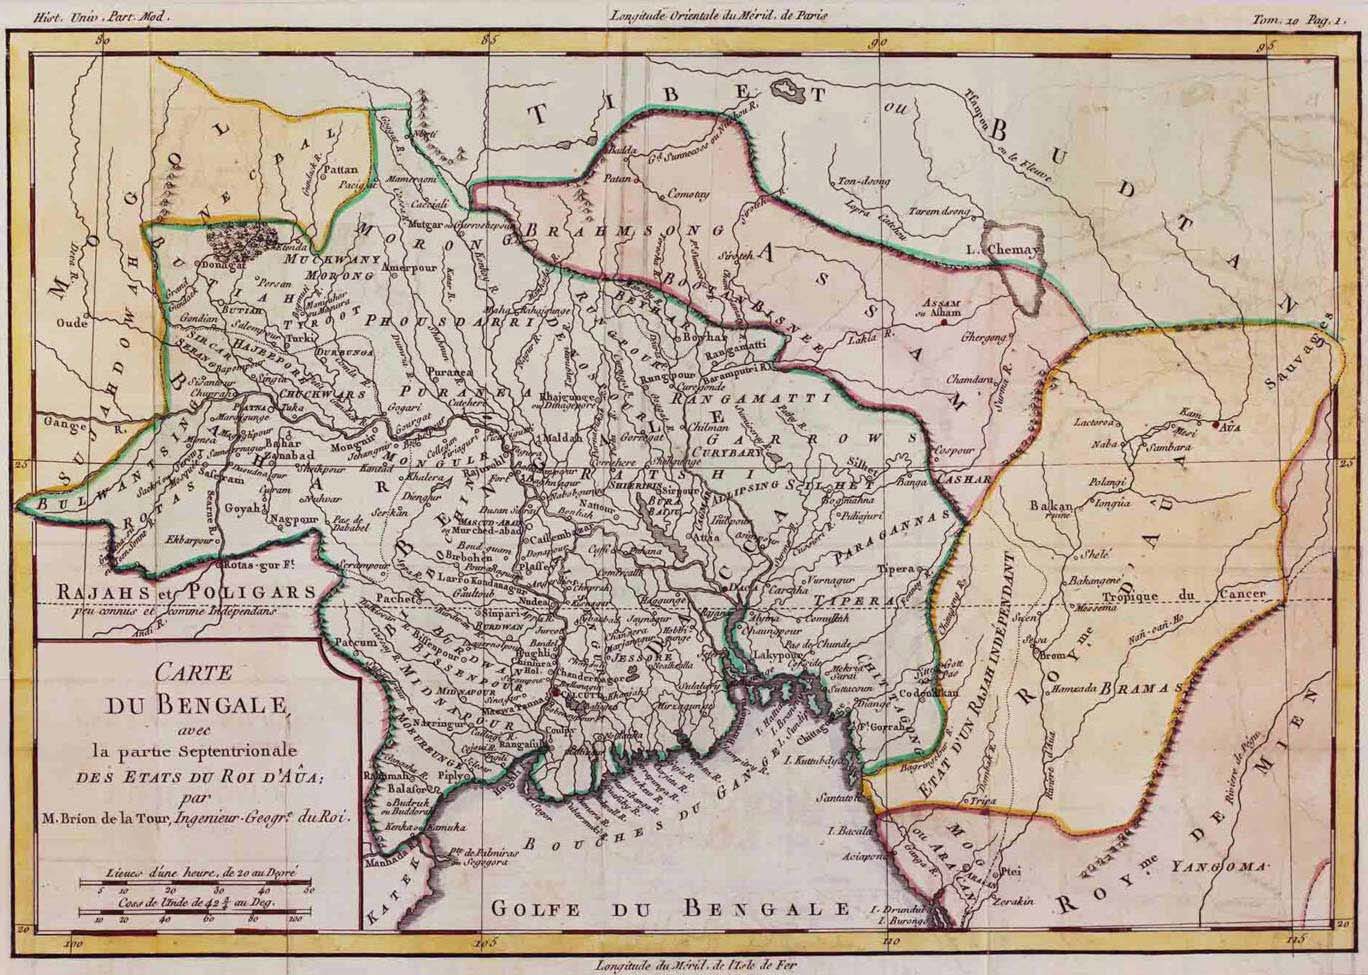 Description: Carte Du Bengale 1785